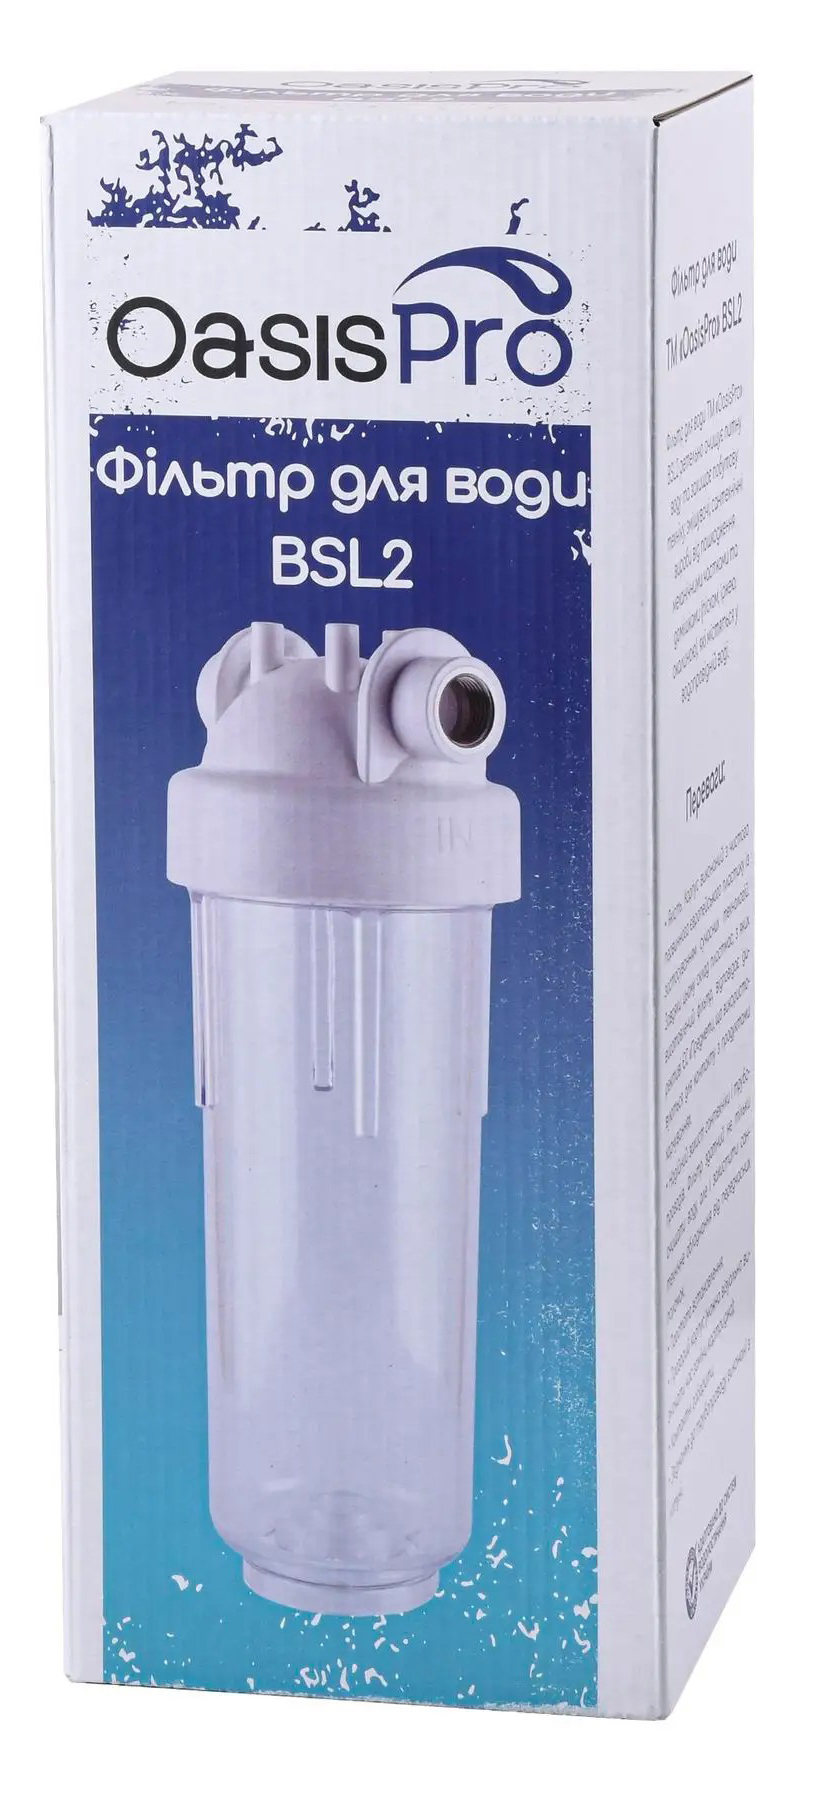 Фильтр OasisPro BSL2, 3/4" + коробка (без картриджа) обзор - фото 8